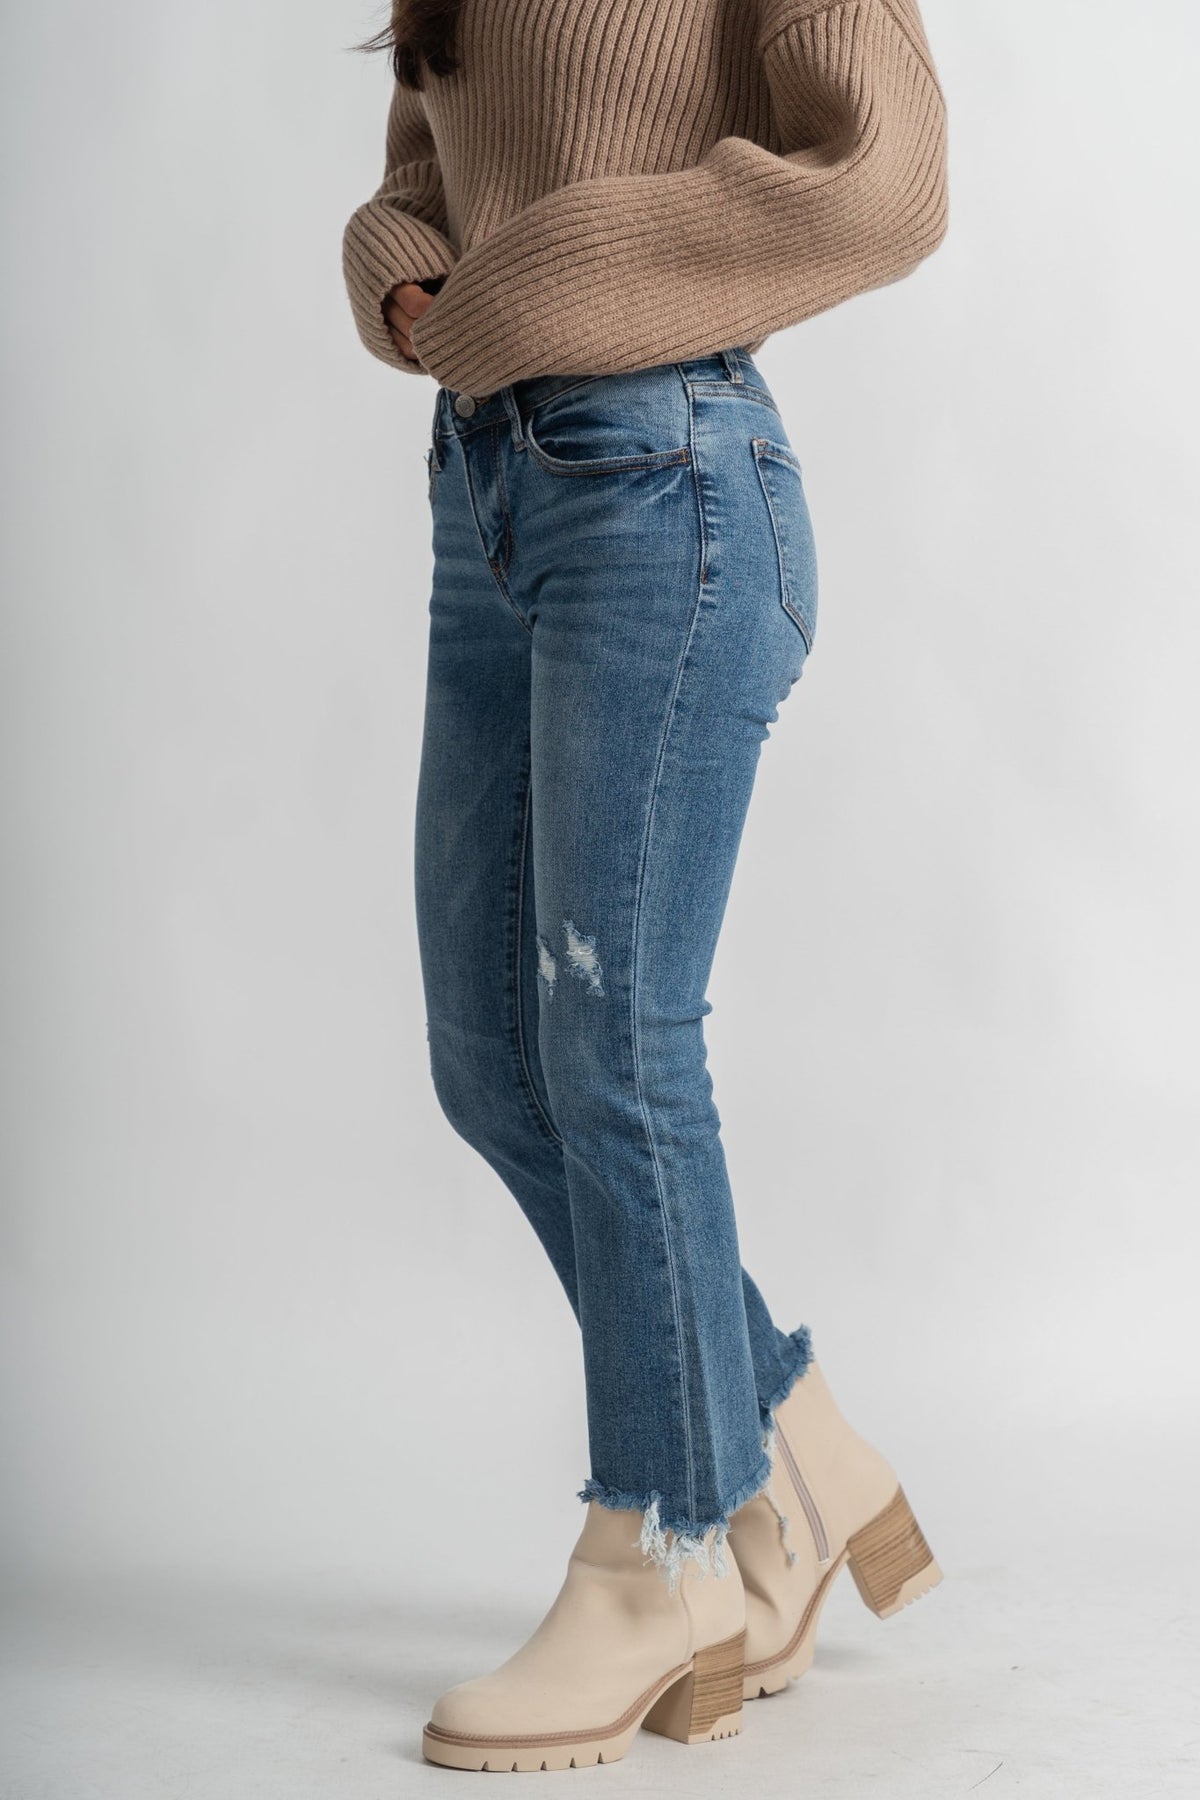 Vervet mid rise bootcut jeans empathy | Lush Fashion Lounge: boutique women's jeans, fashion jeans for women, affordable fashion jeans, cute boutique jeans